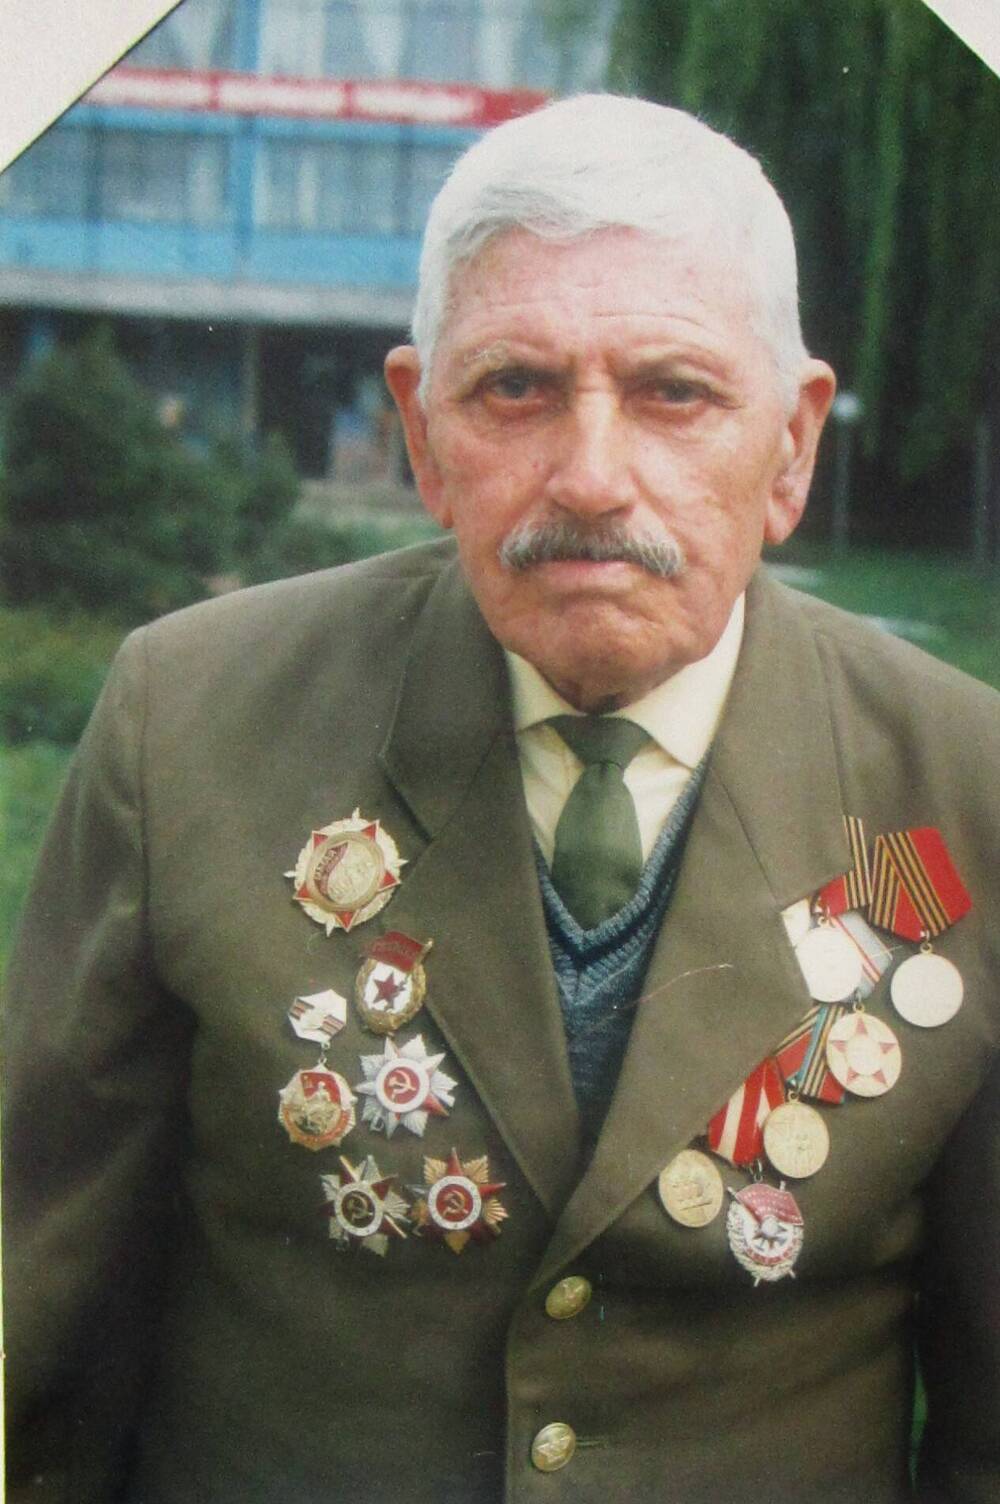 Фотопортрет Шеховцов П.З. - ветеран Великой Отечественной войны, кавалер ордена Красного Знамени